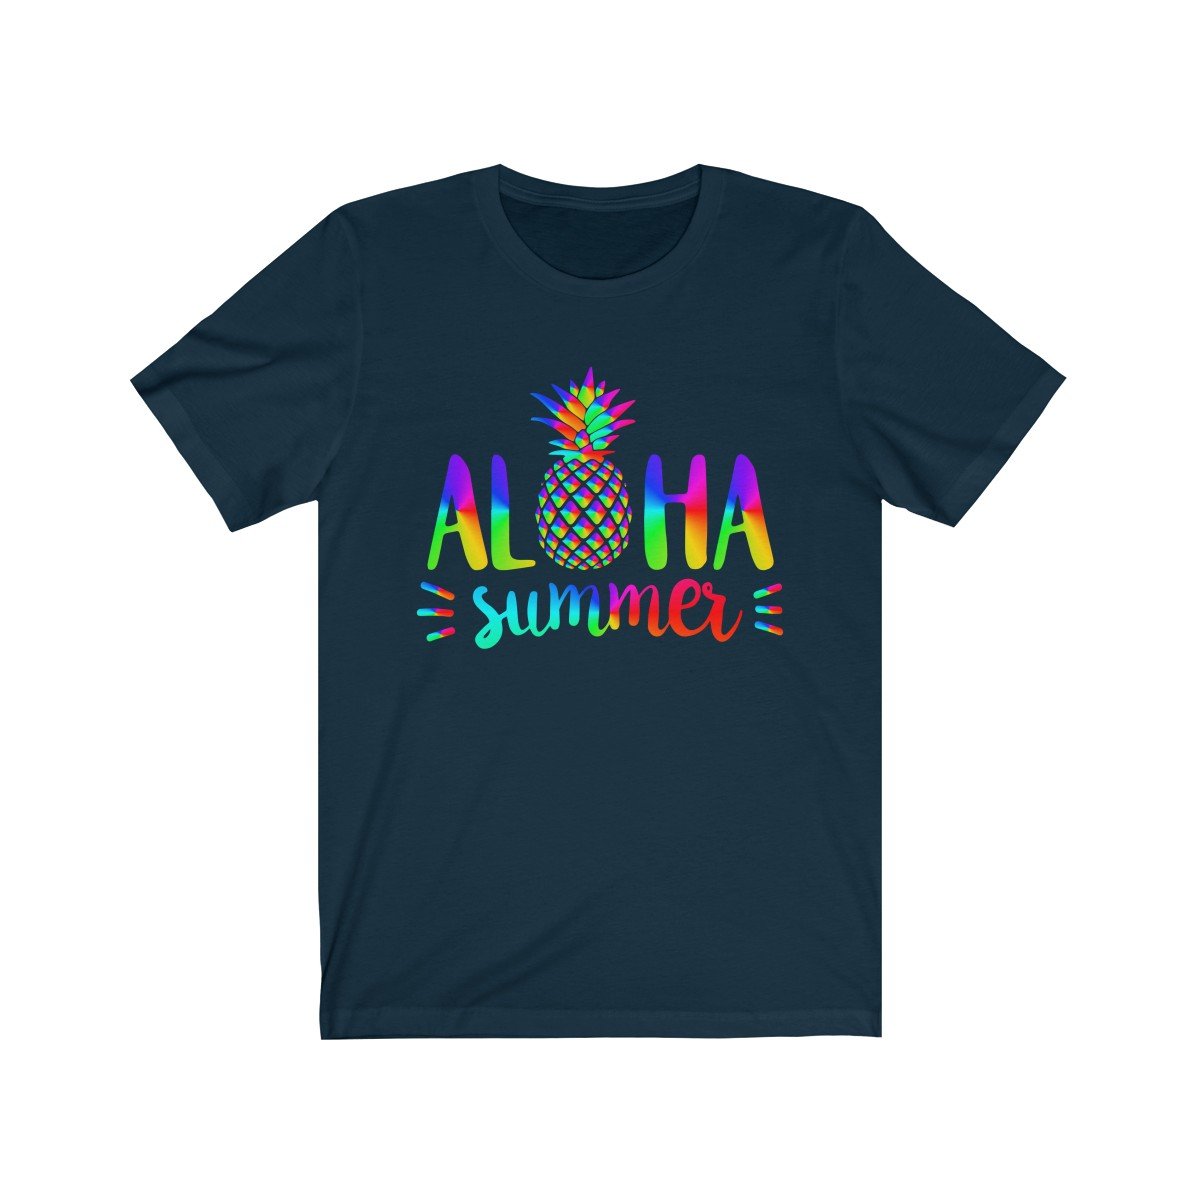 Aloha Summer Unisex Short Sleeve Hawaii Beach T-shirt, 7 colors available - Captain Woody's Beach Club